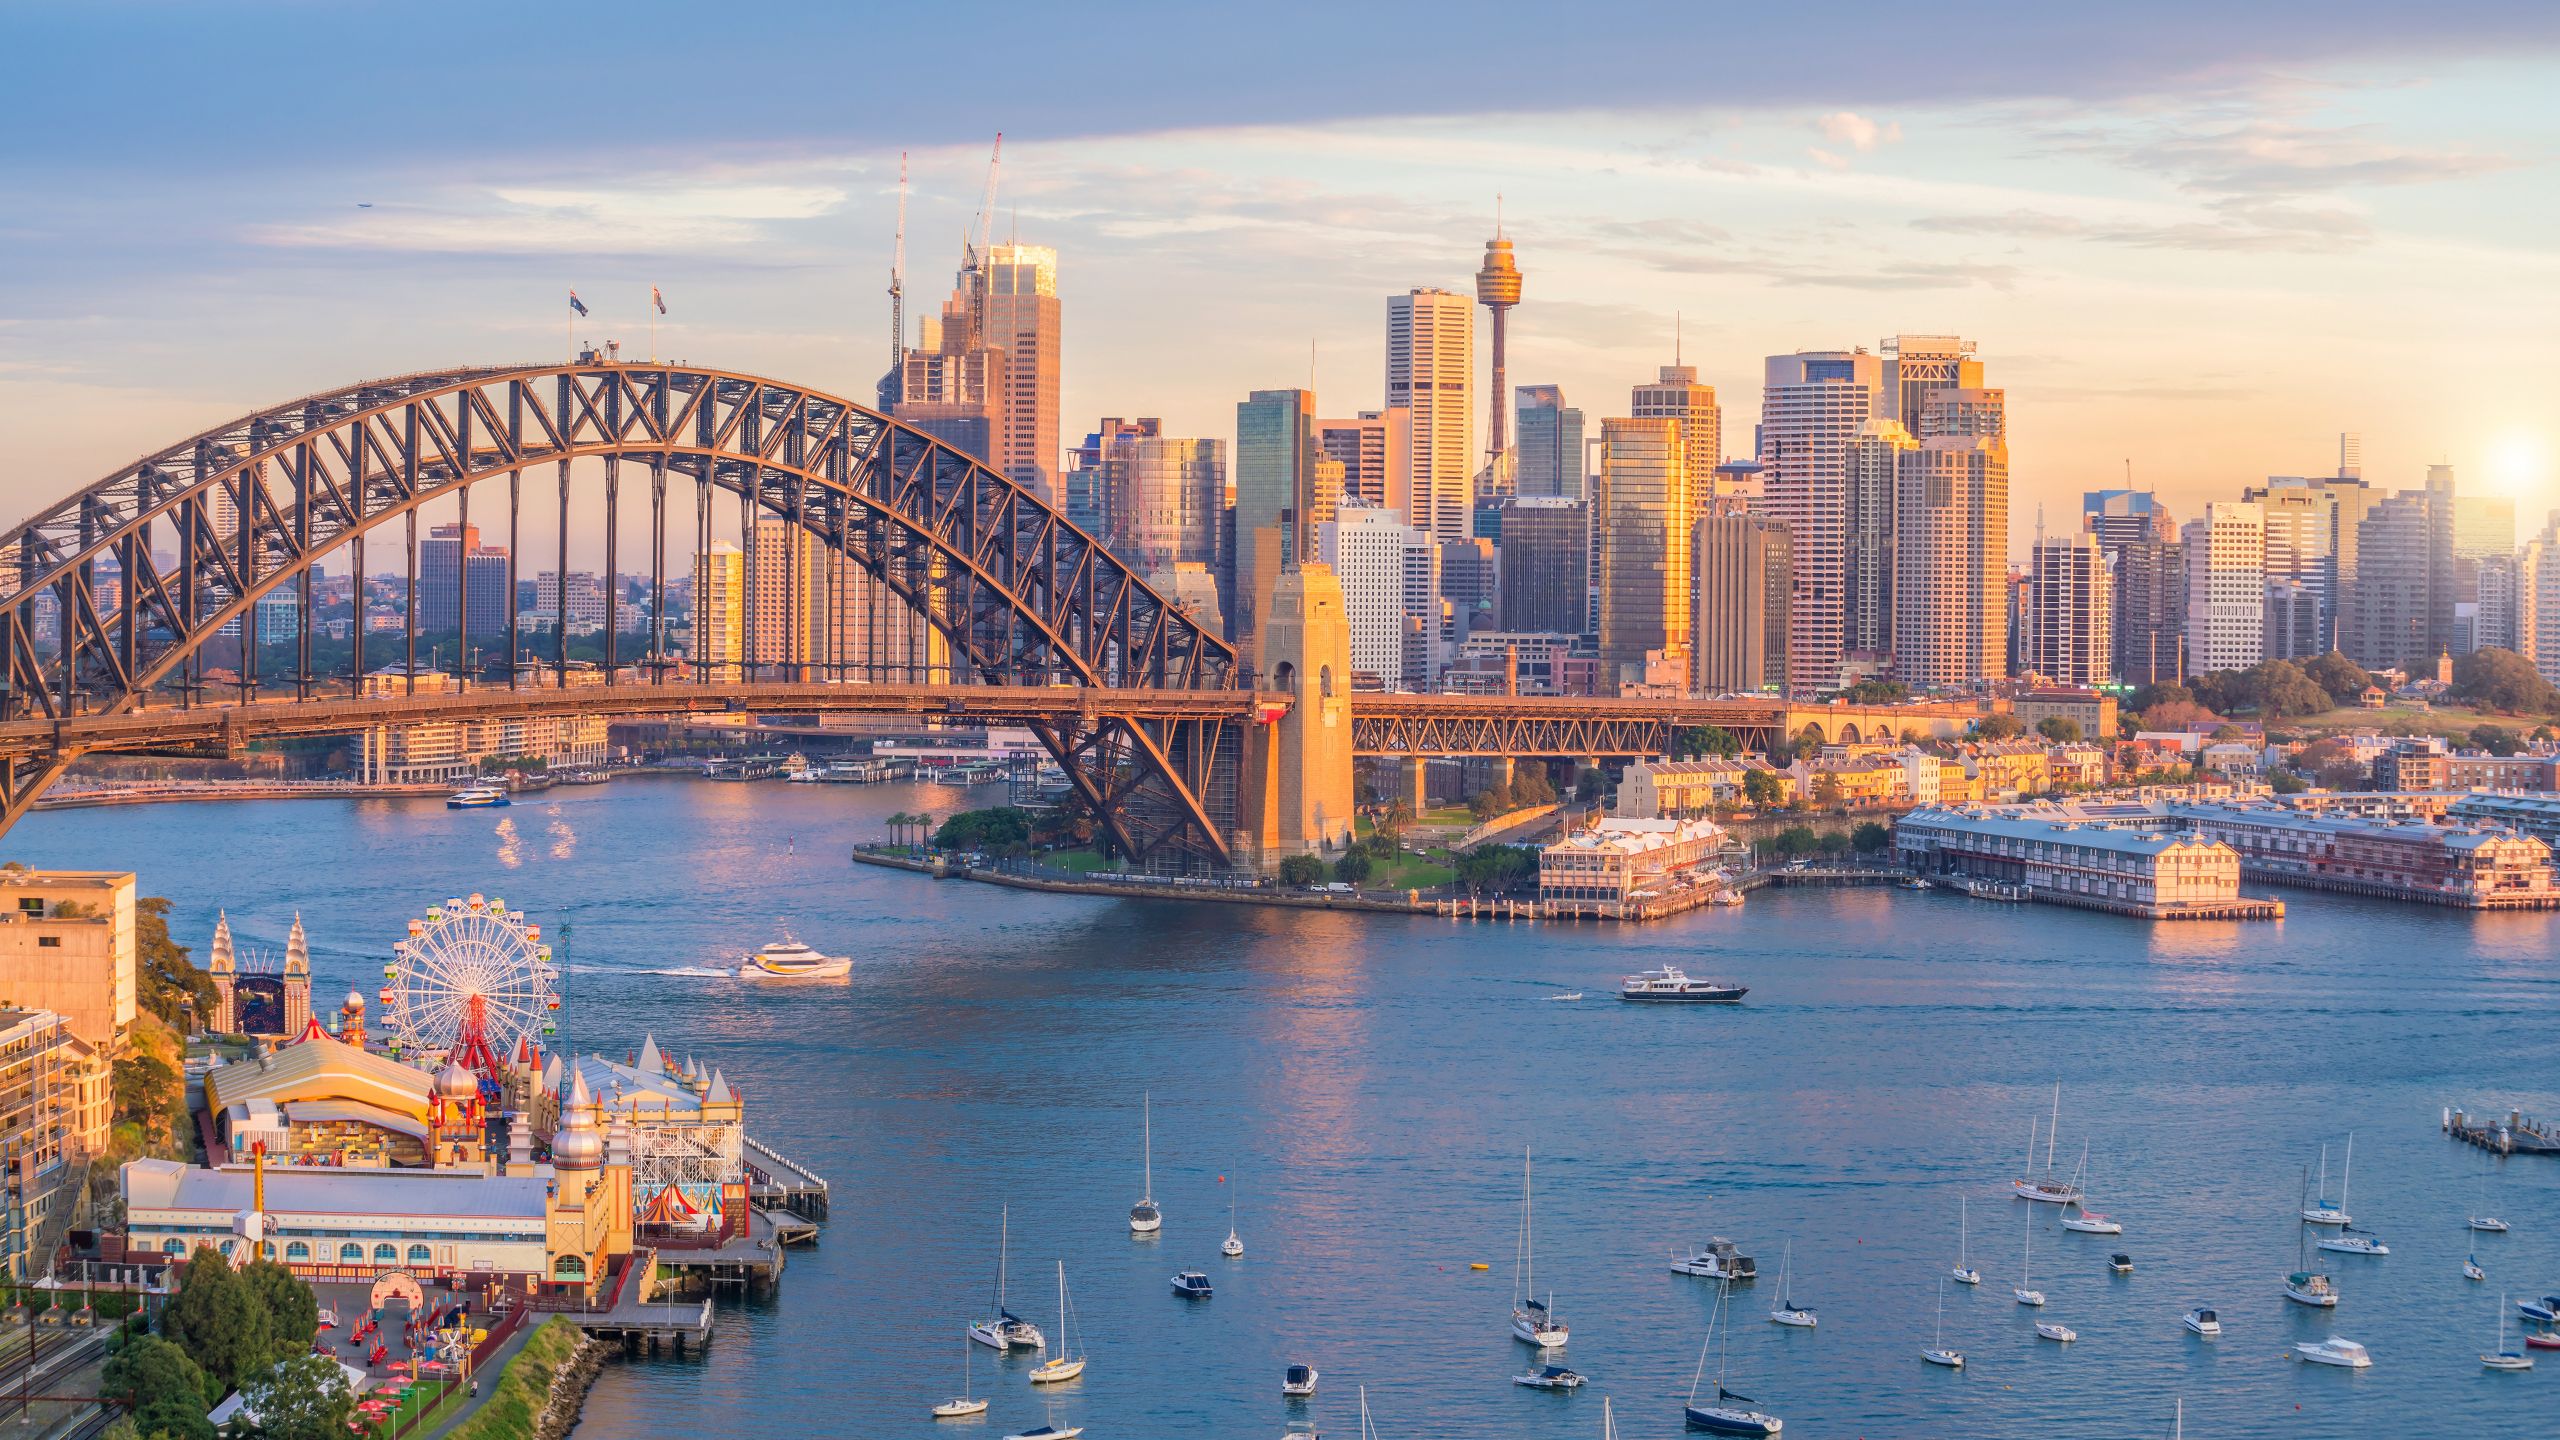 Uma paisagem urbana do porto de Sydney com a Sydney Harbour Bridge e veleiros